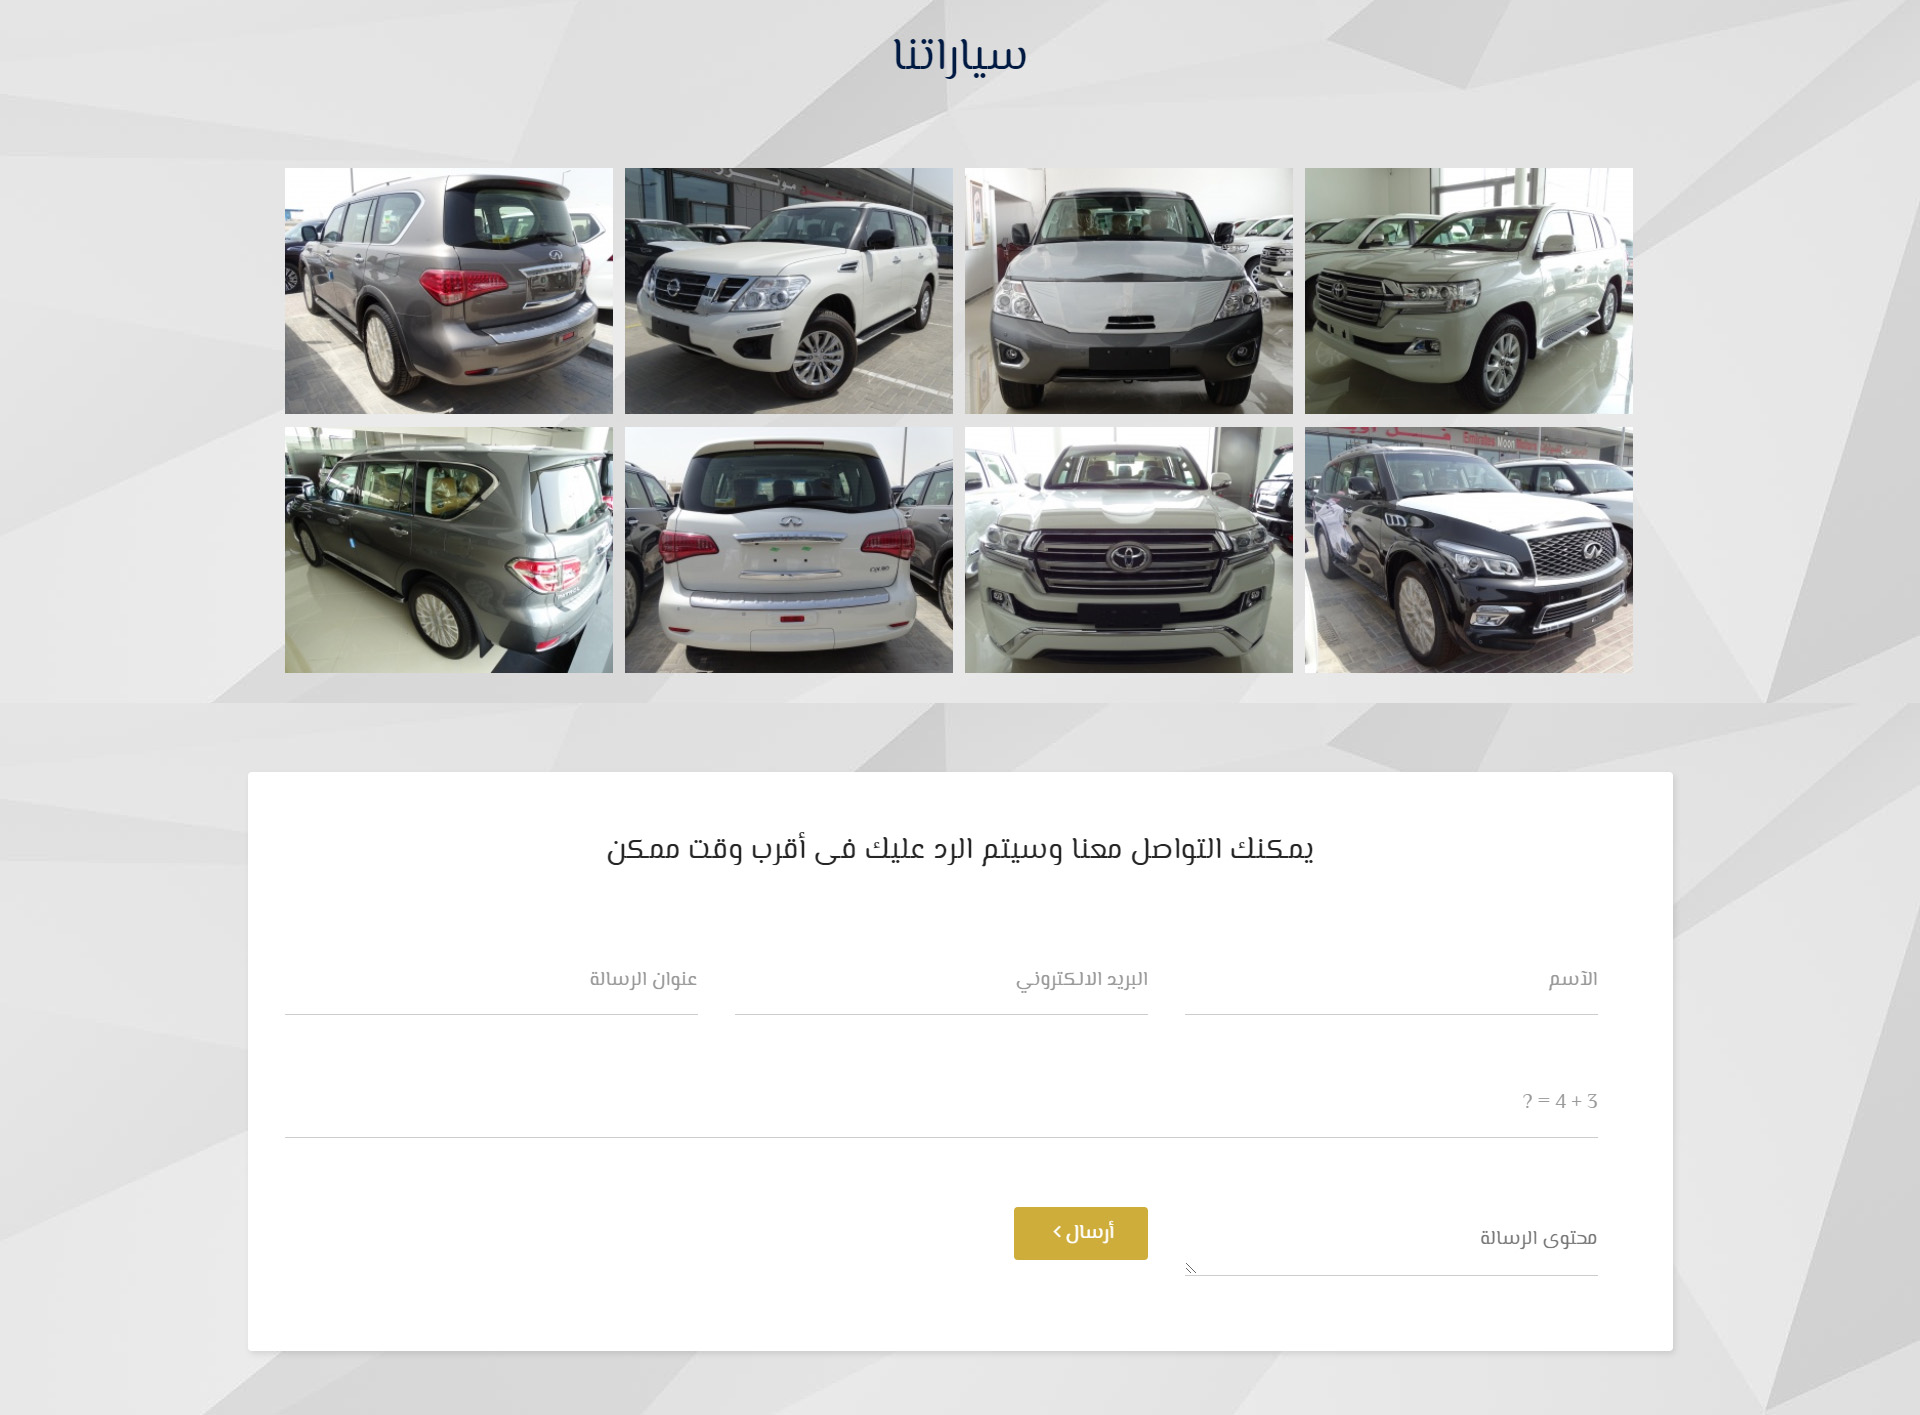 تصميم موقع الكتروني لشركة سيارات مجموعة فل أوبشن موتورز فى الإمارات - أبوظبي